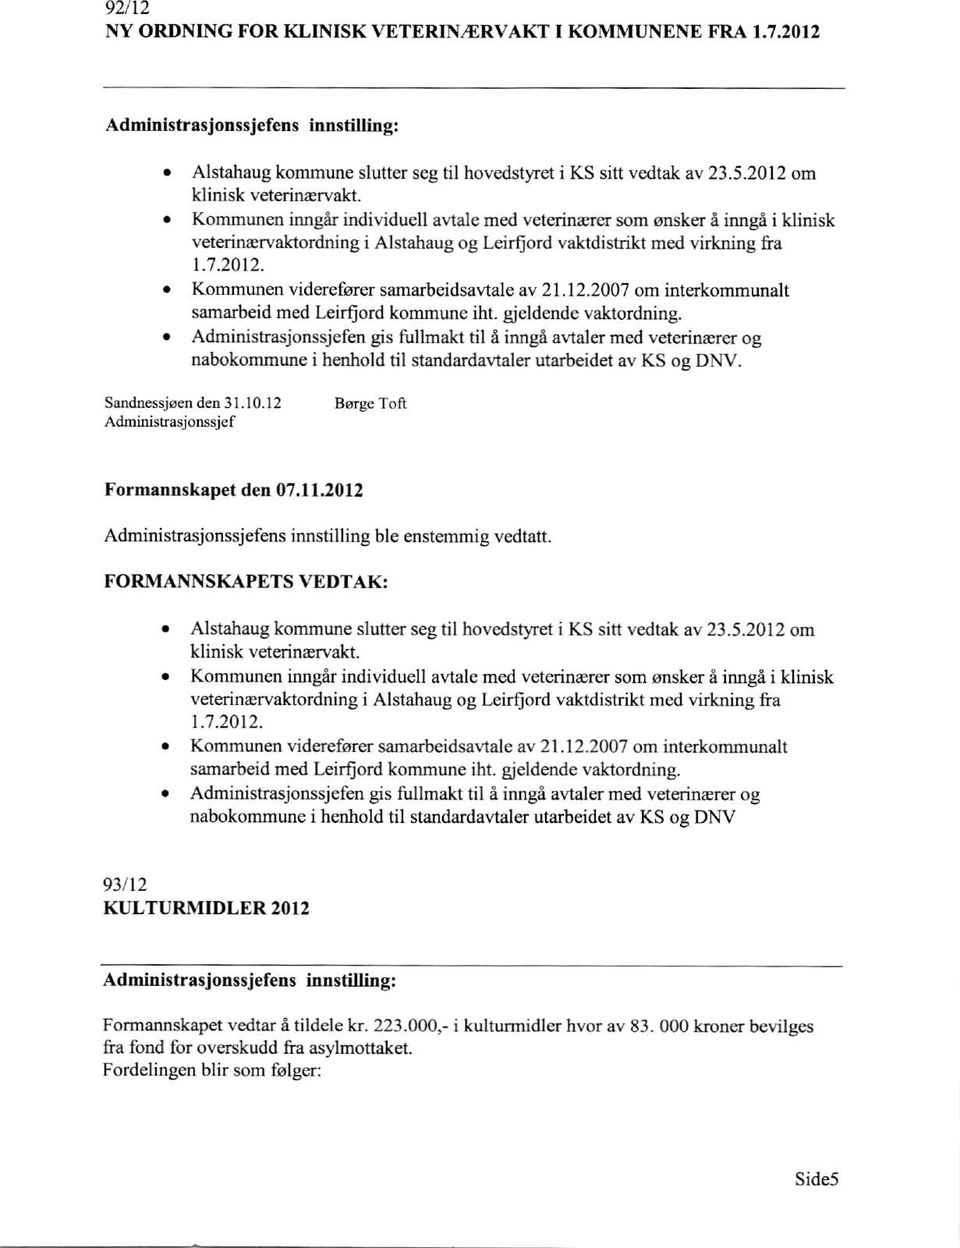 12.2007 om interkommunalt samarbeid med Leirfjord kommune iht. gjeldende vaktordning.